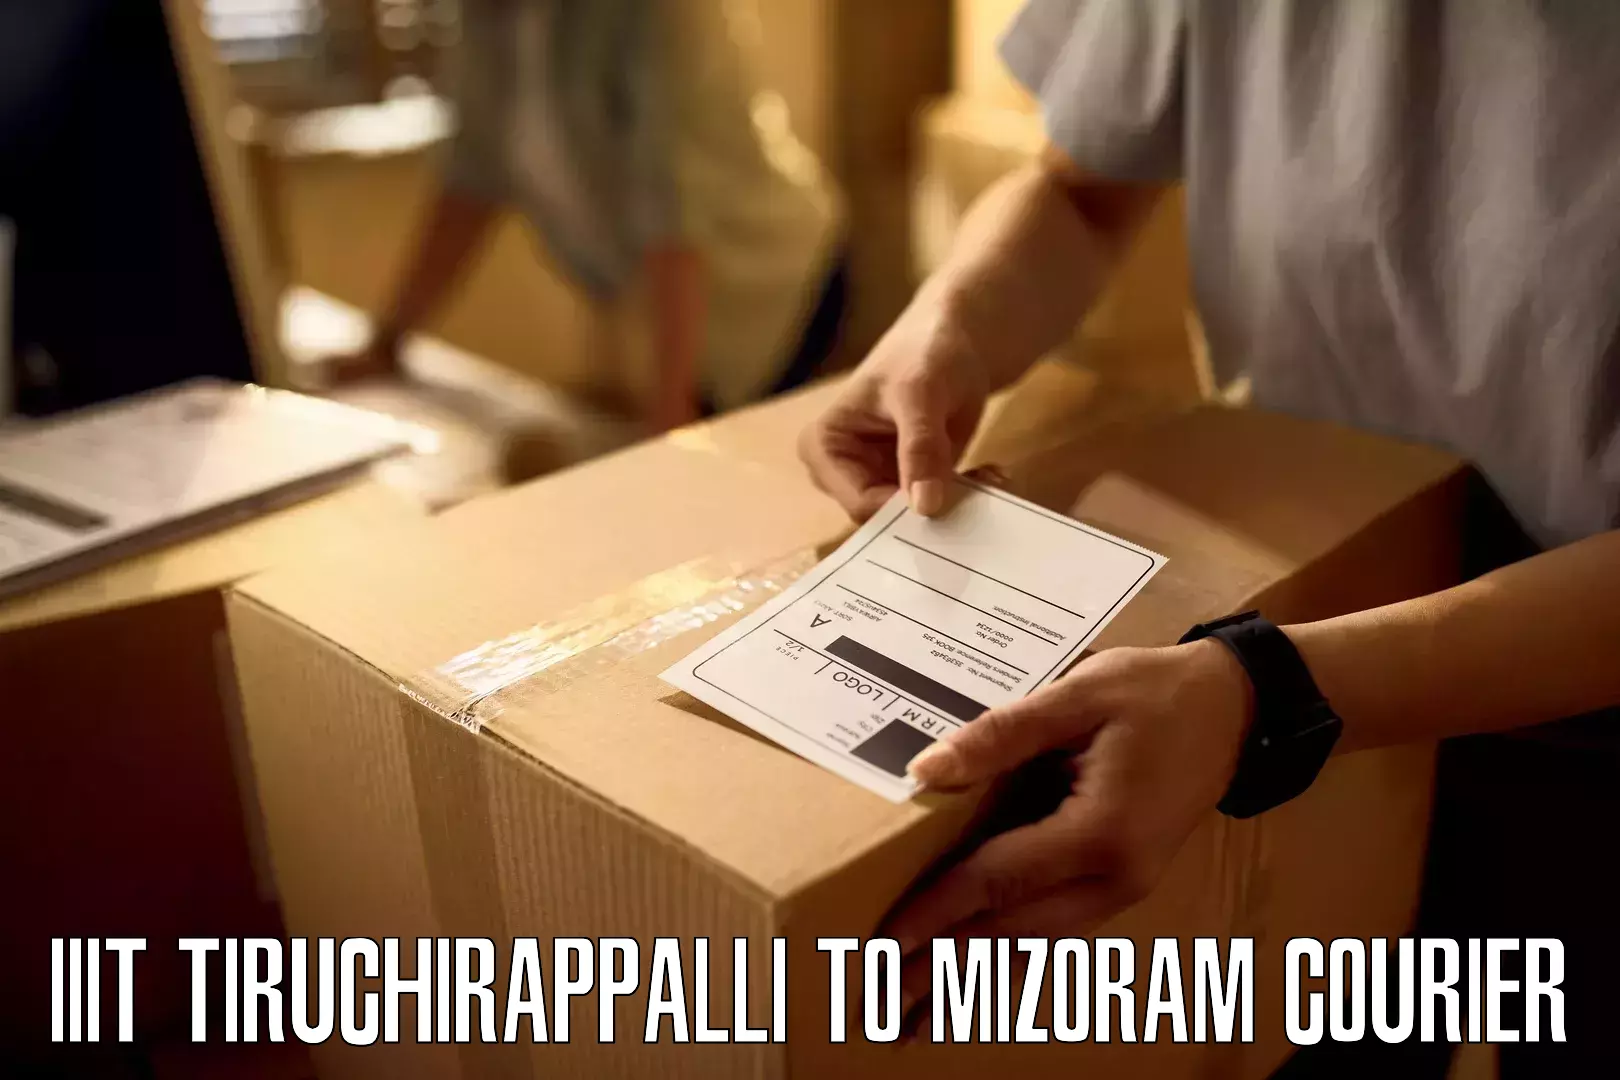 24-hour delivery options IIIT Tiruchirappalli to Aizawl